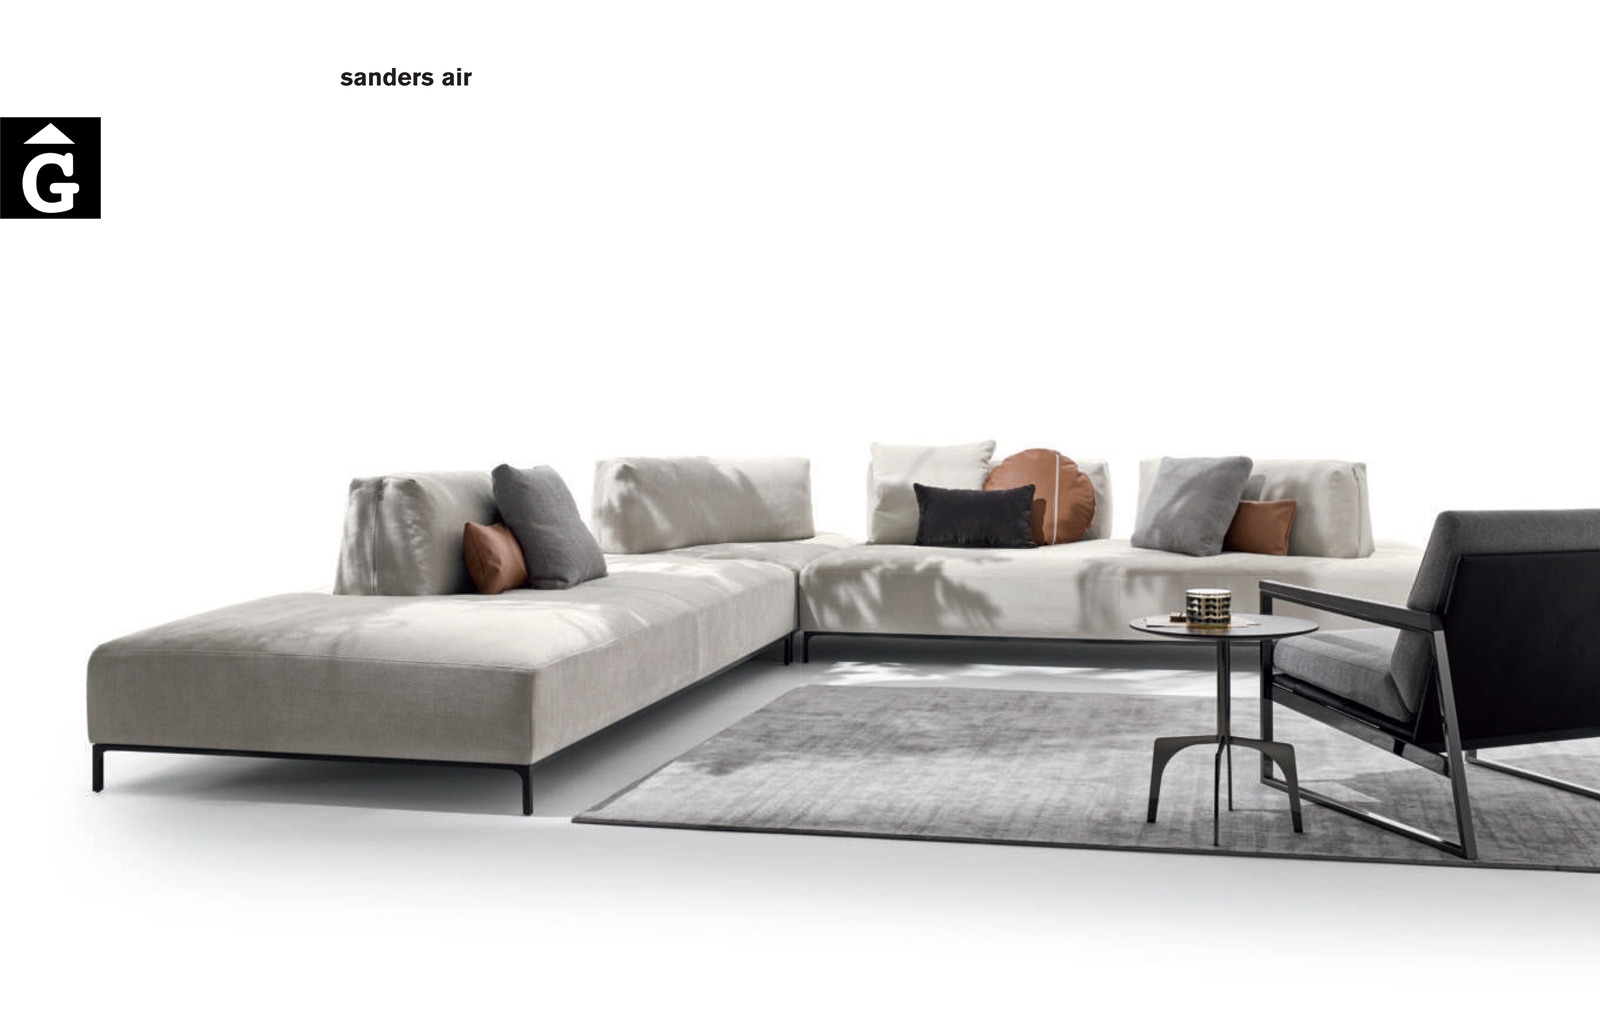 Sanders Air Sofà – Ditre Italia Sofas disseny i qualitat alta by mobles Gifreu